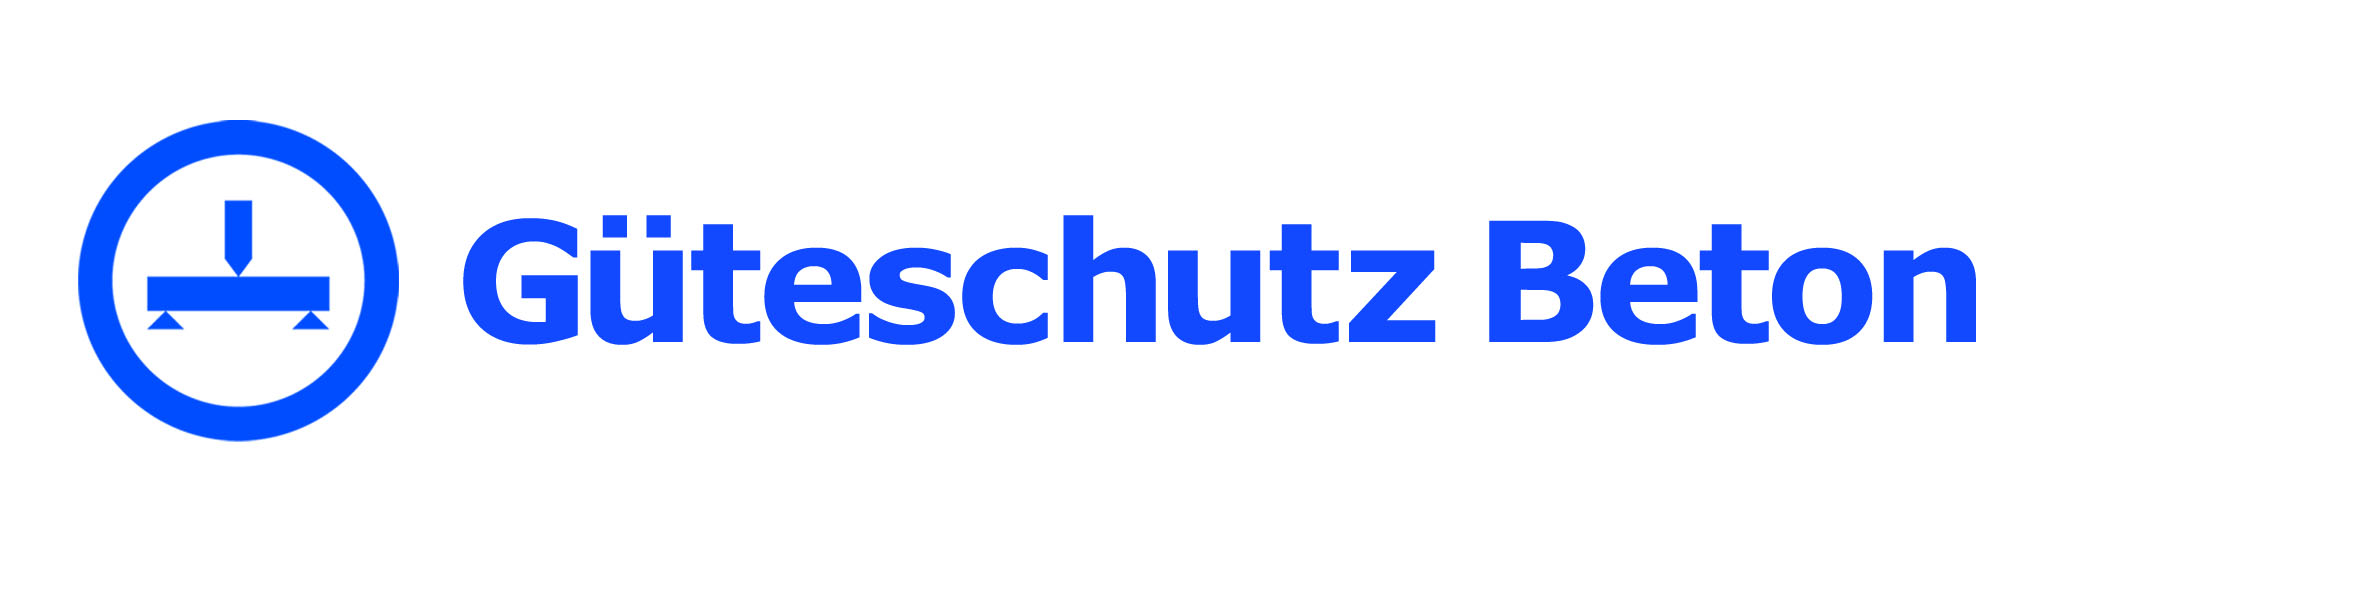 Logo Gueteschutz Beton NRW